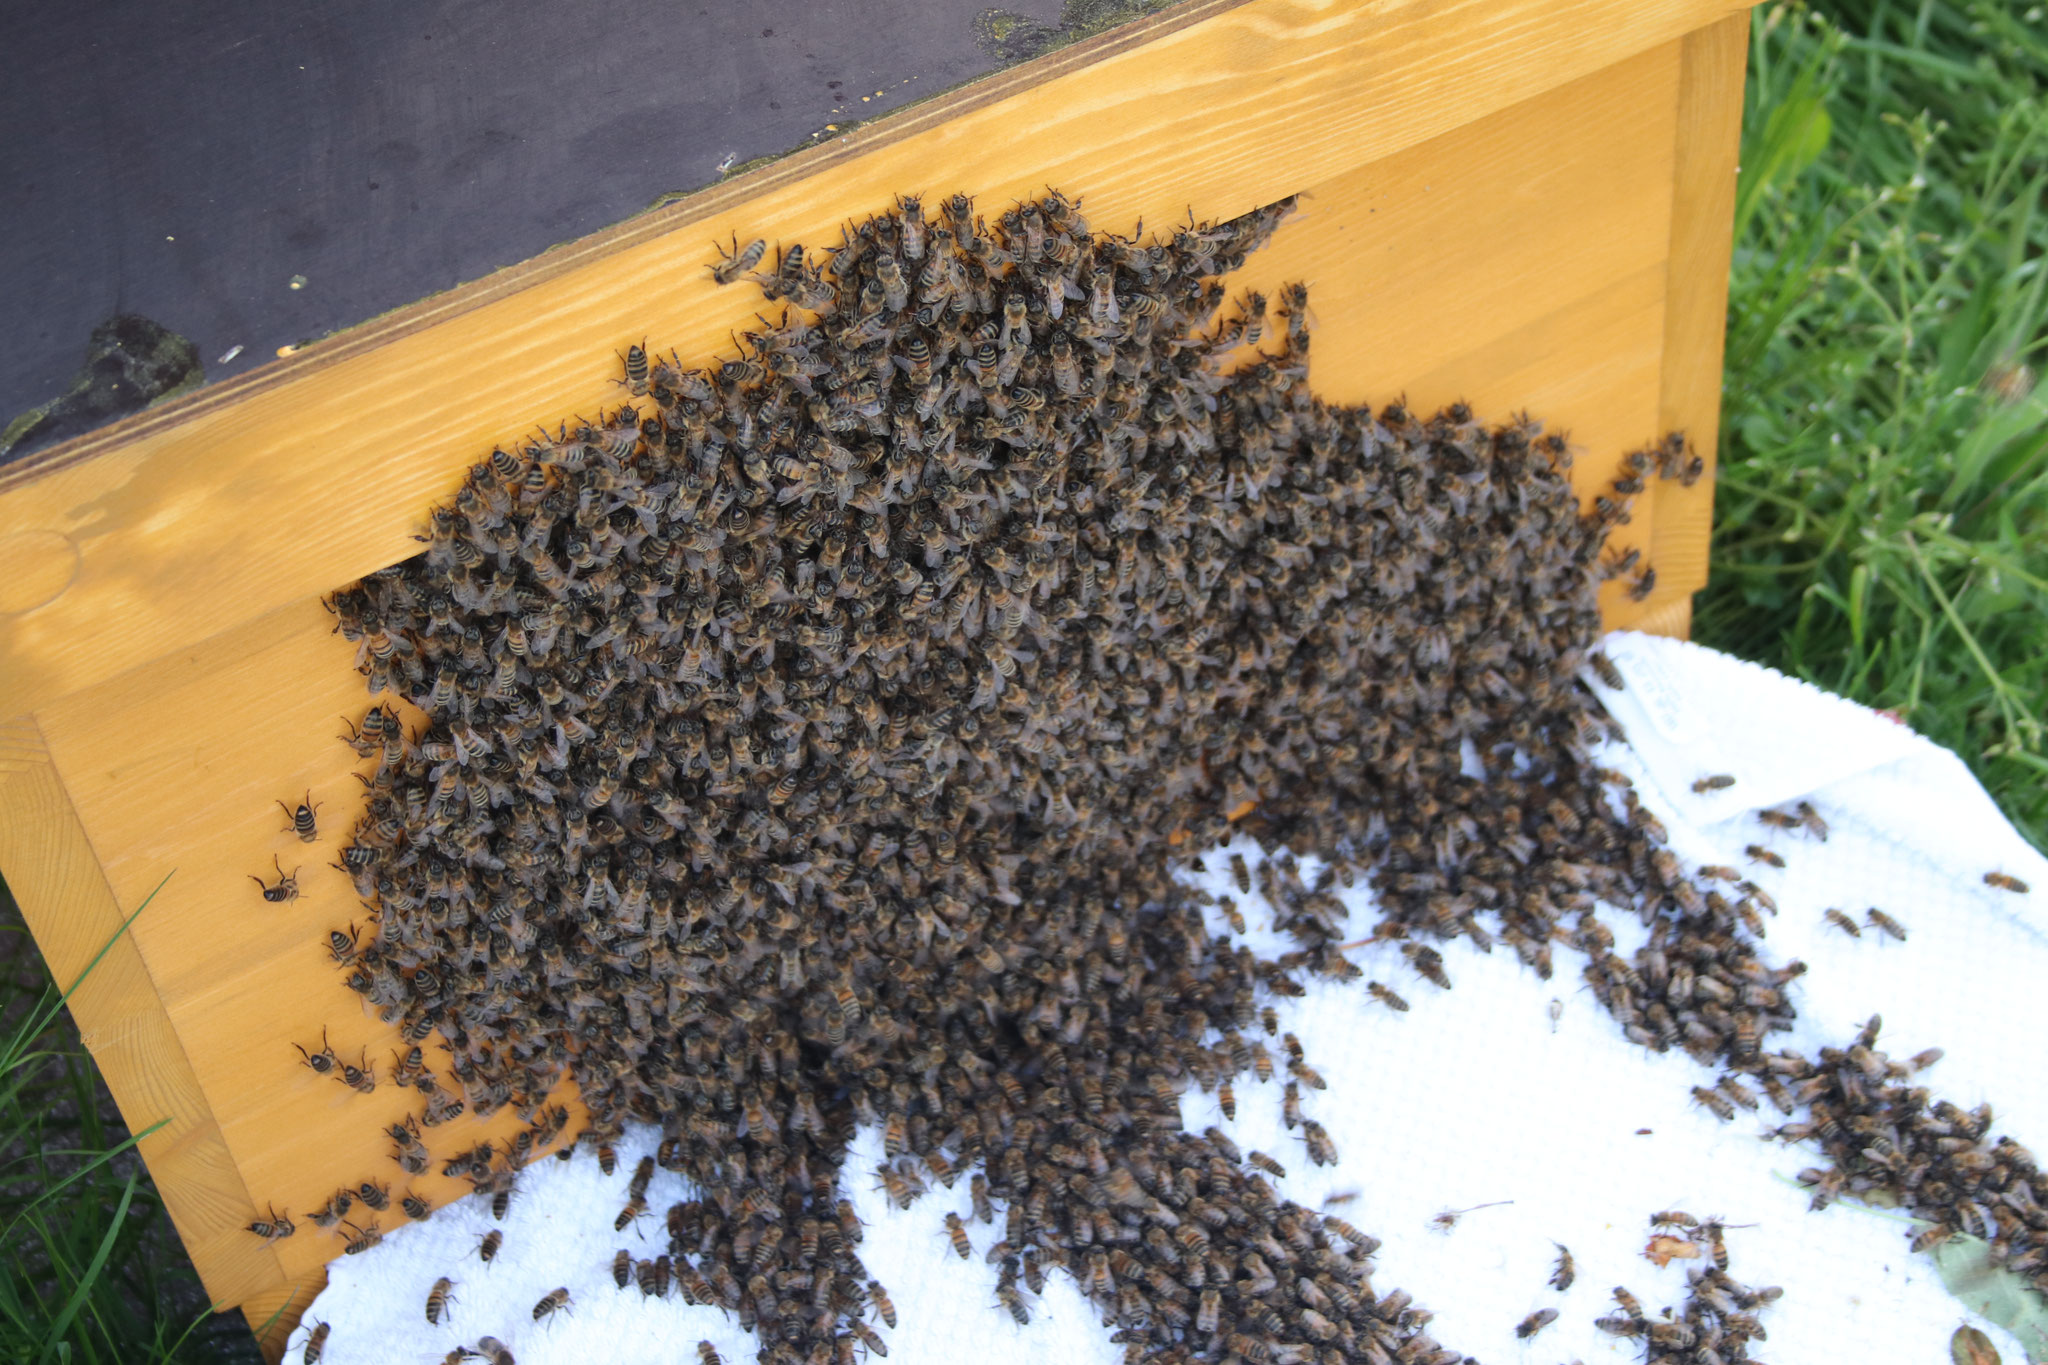 Zuhause angekommen laufen die Bienen in in ihr neues Zuhause ein.